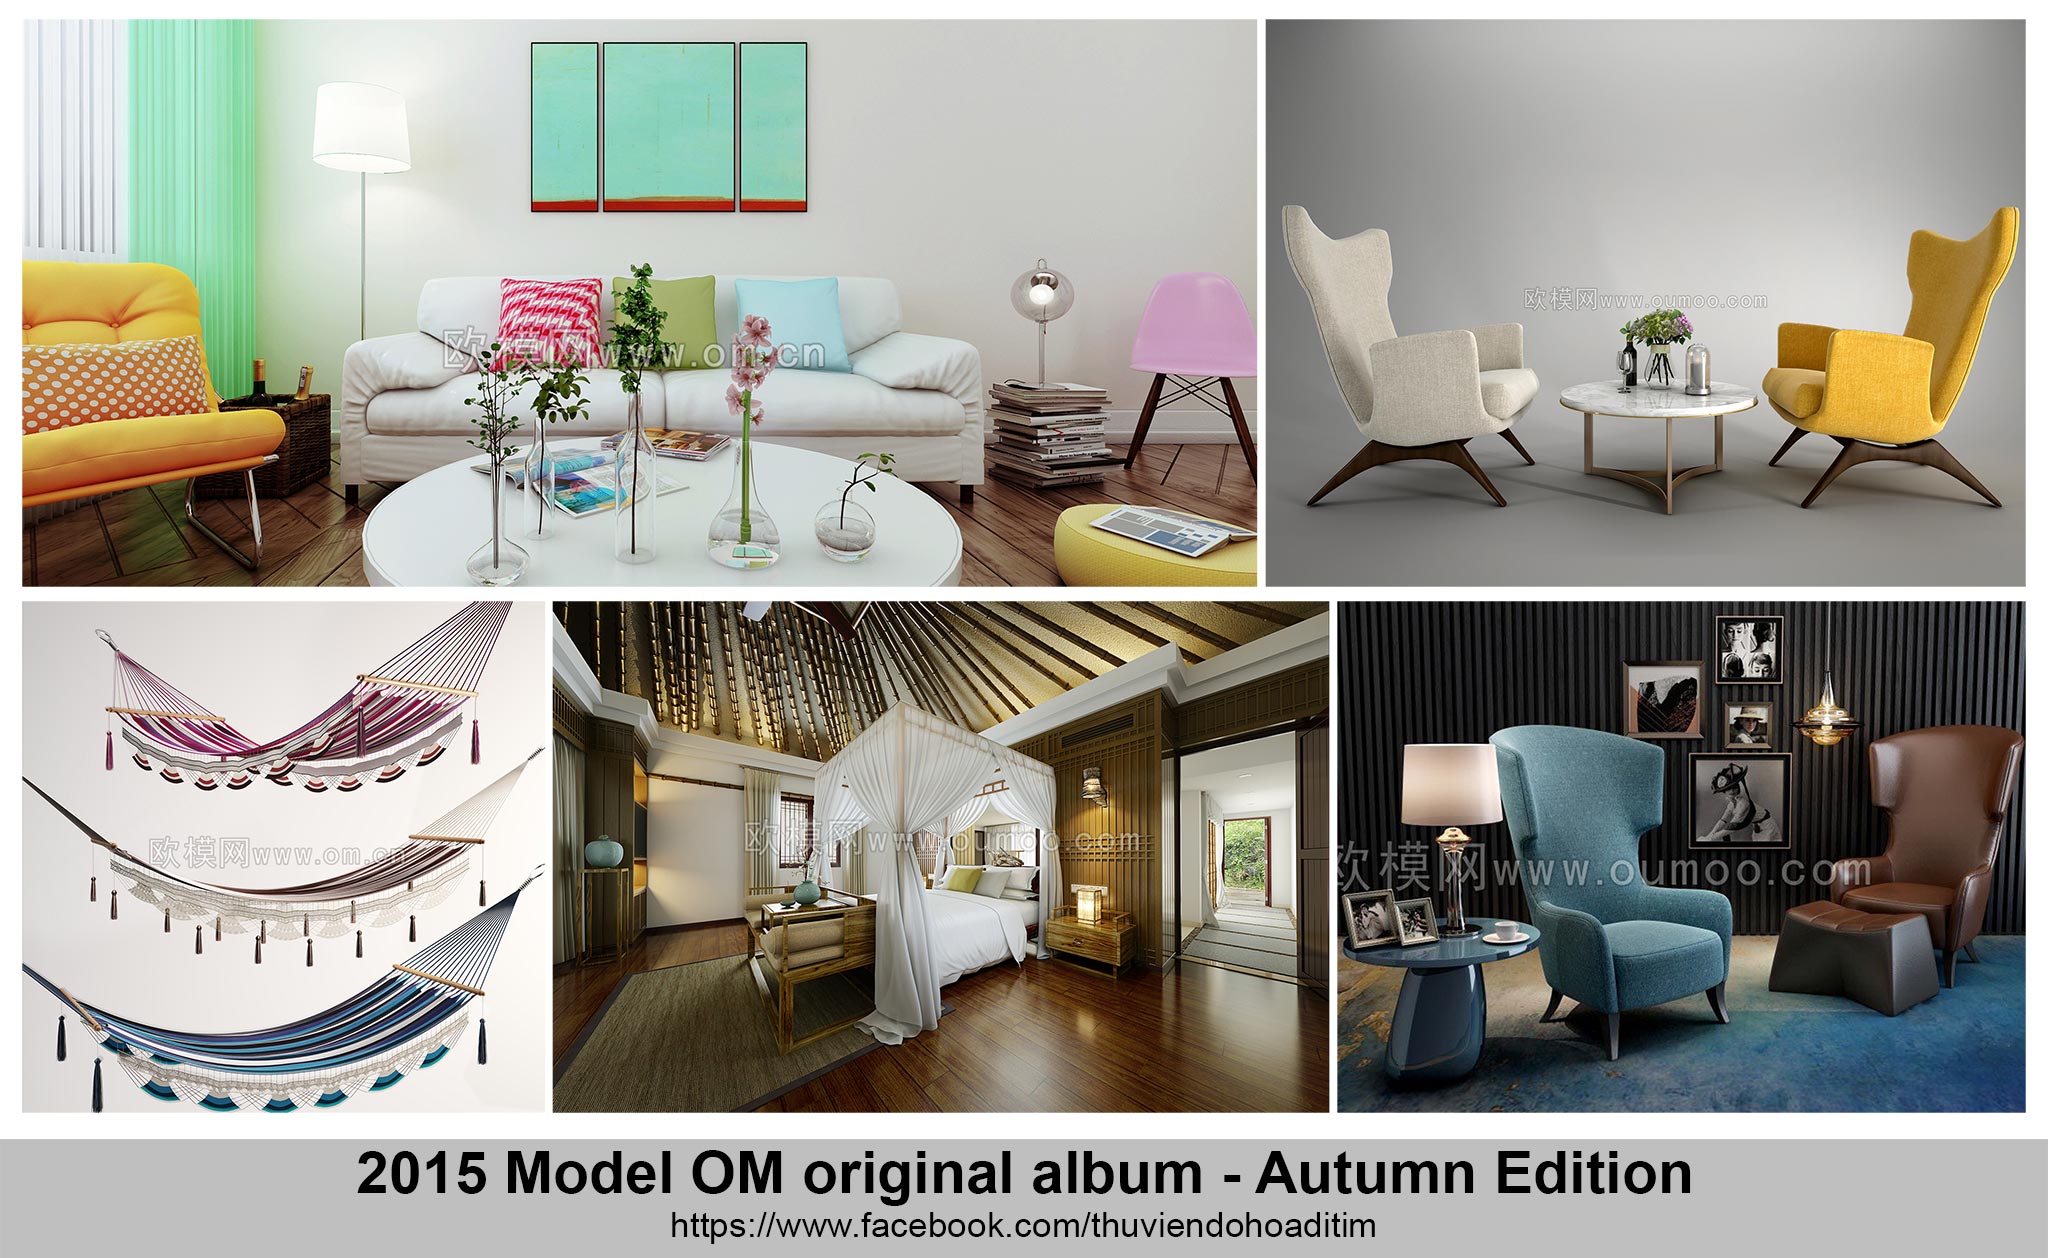 2015 Model OM original album Autumn Edition